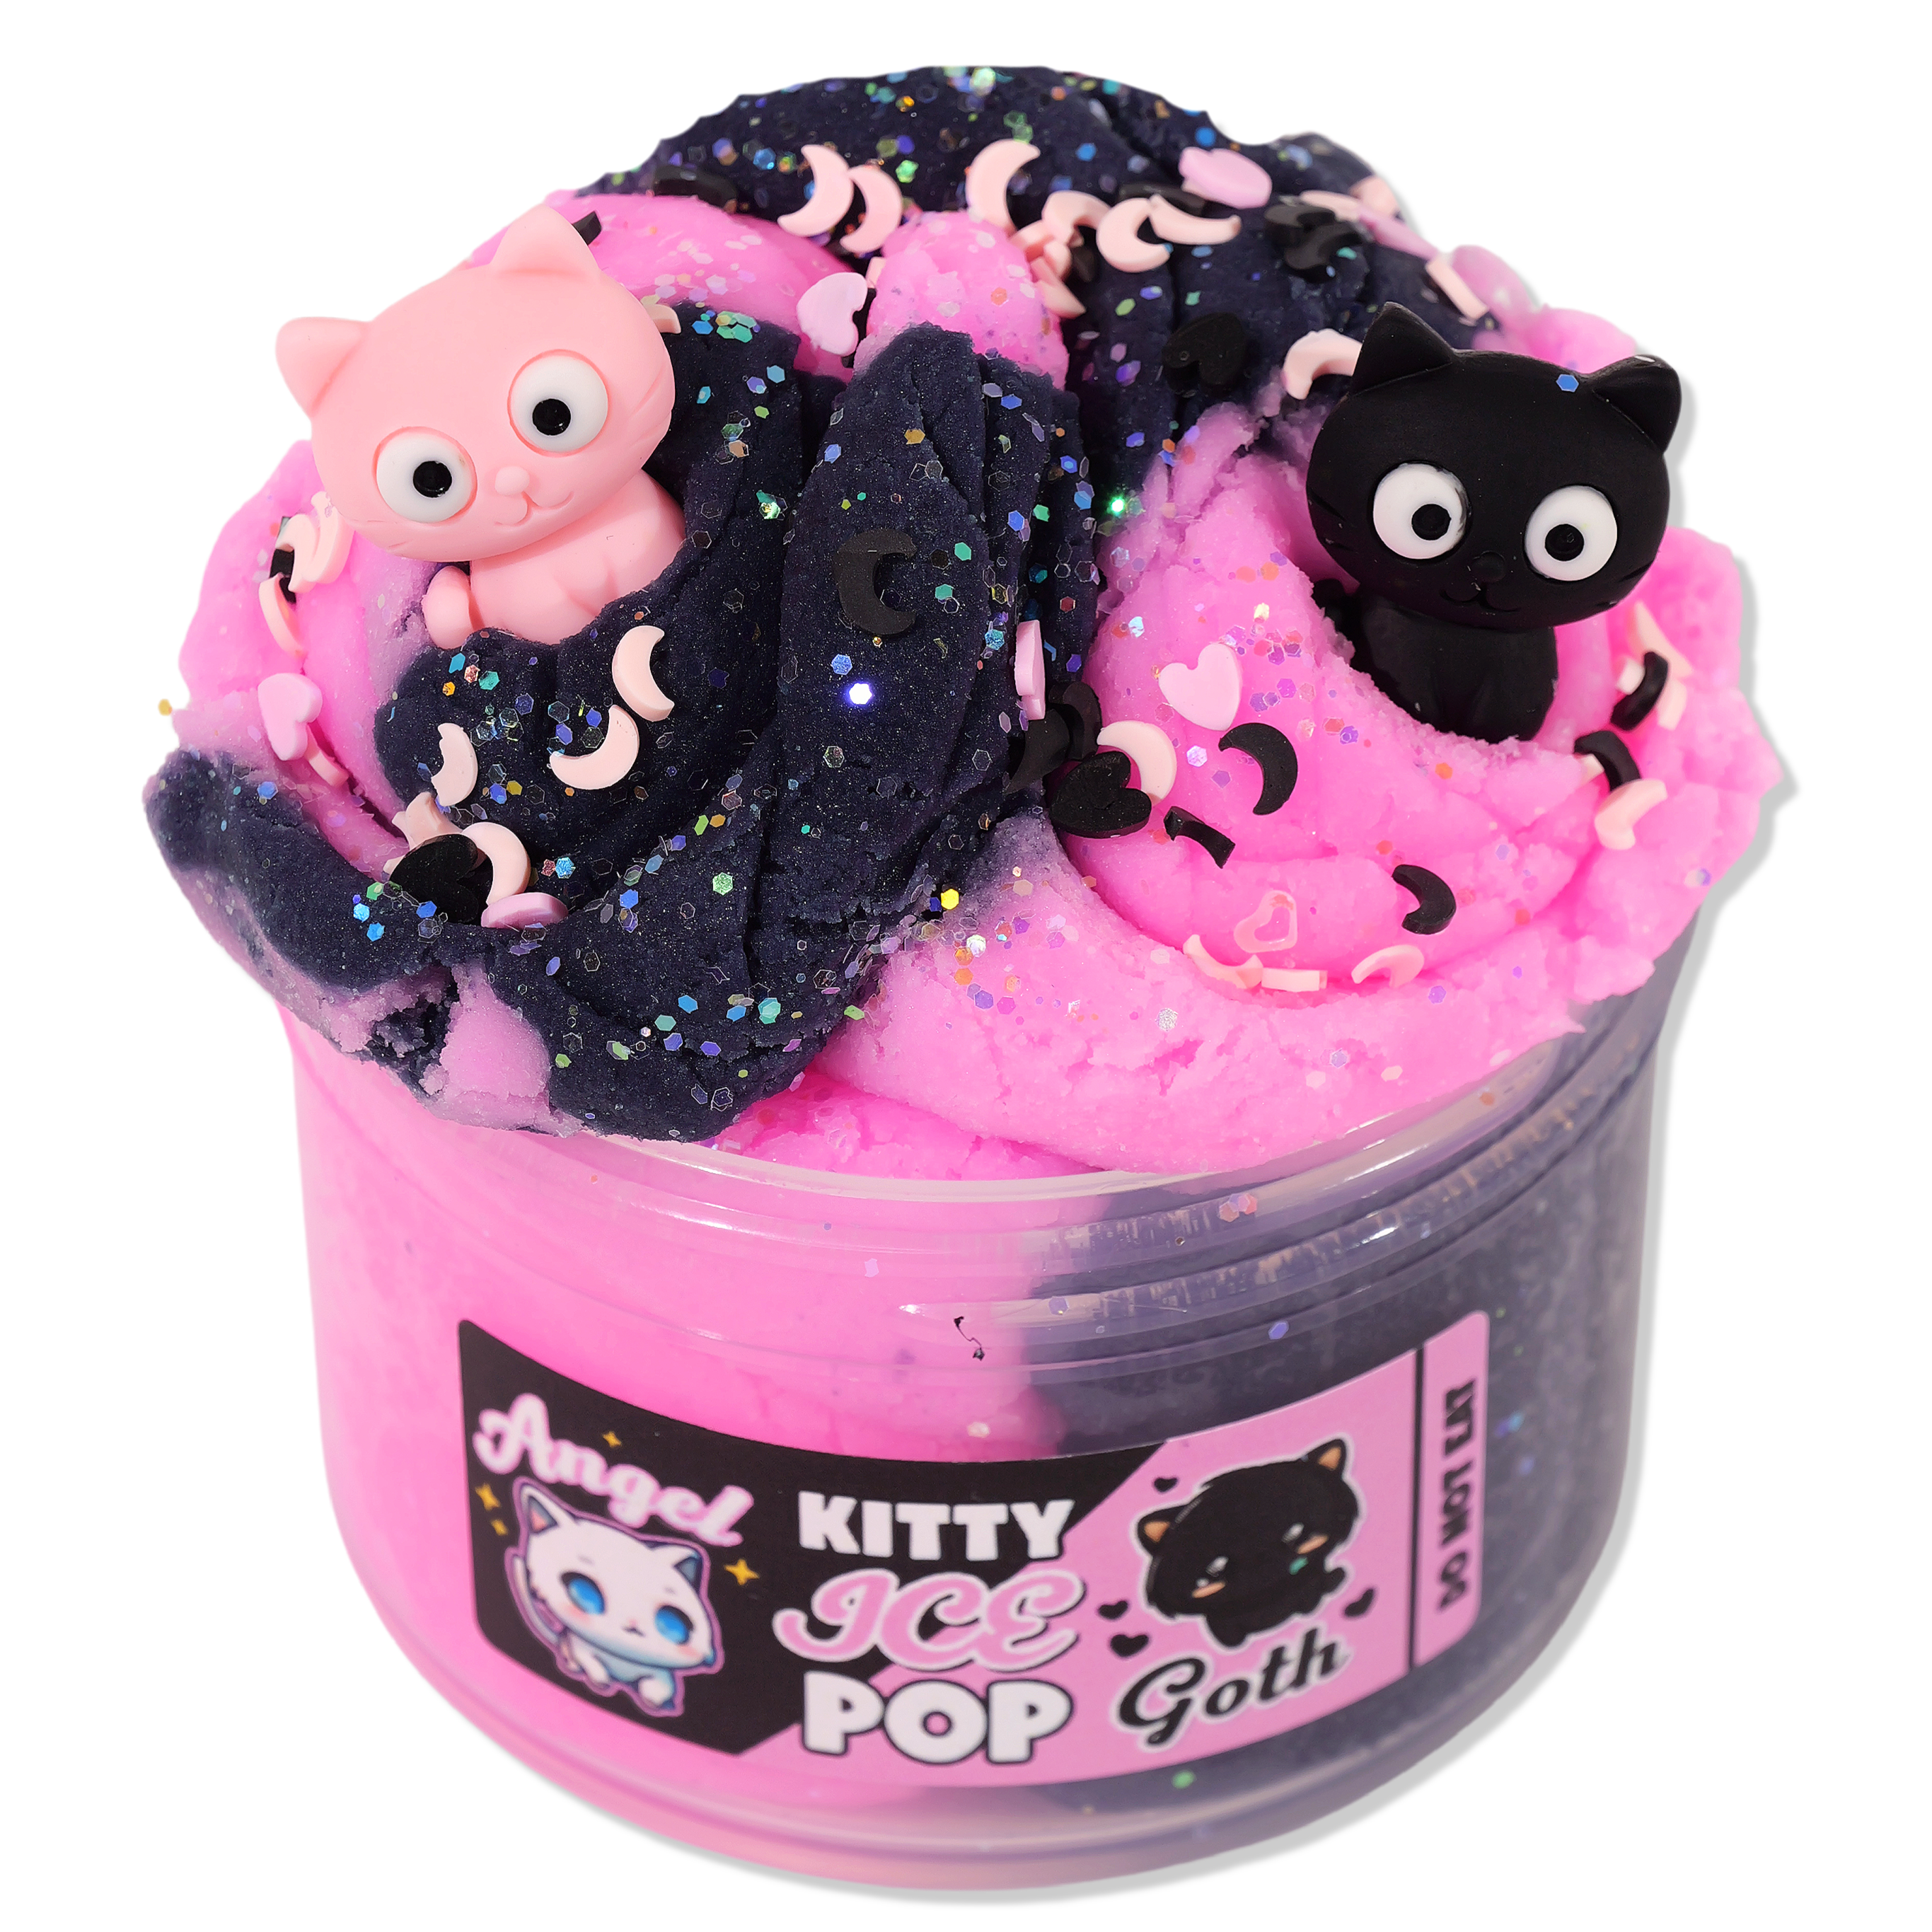 KITTY Ice Pop Tray - Teapet